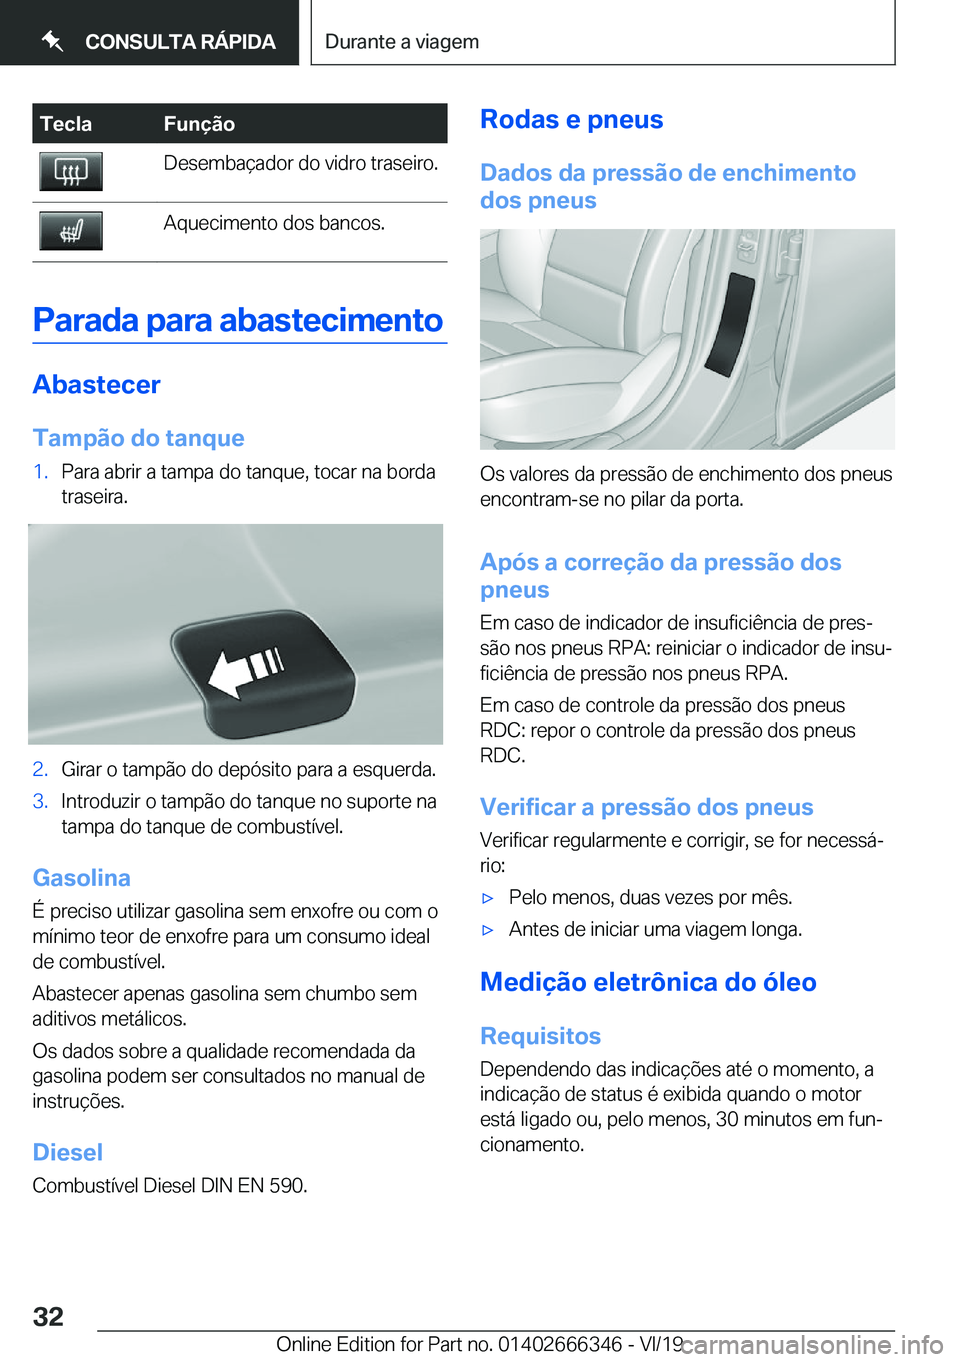 BMW 4 SERIES COUPE 2020  Manual do condutor (in Portuguese) �T�e�c�l�a�F�u�n�